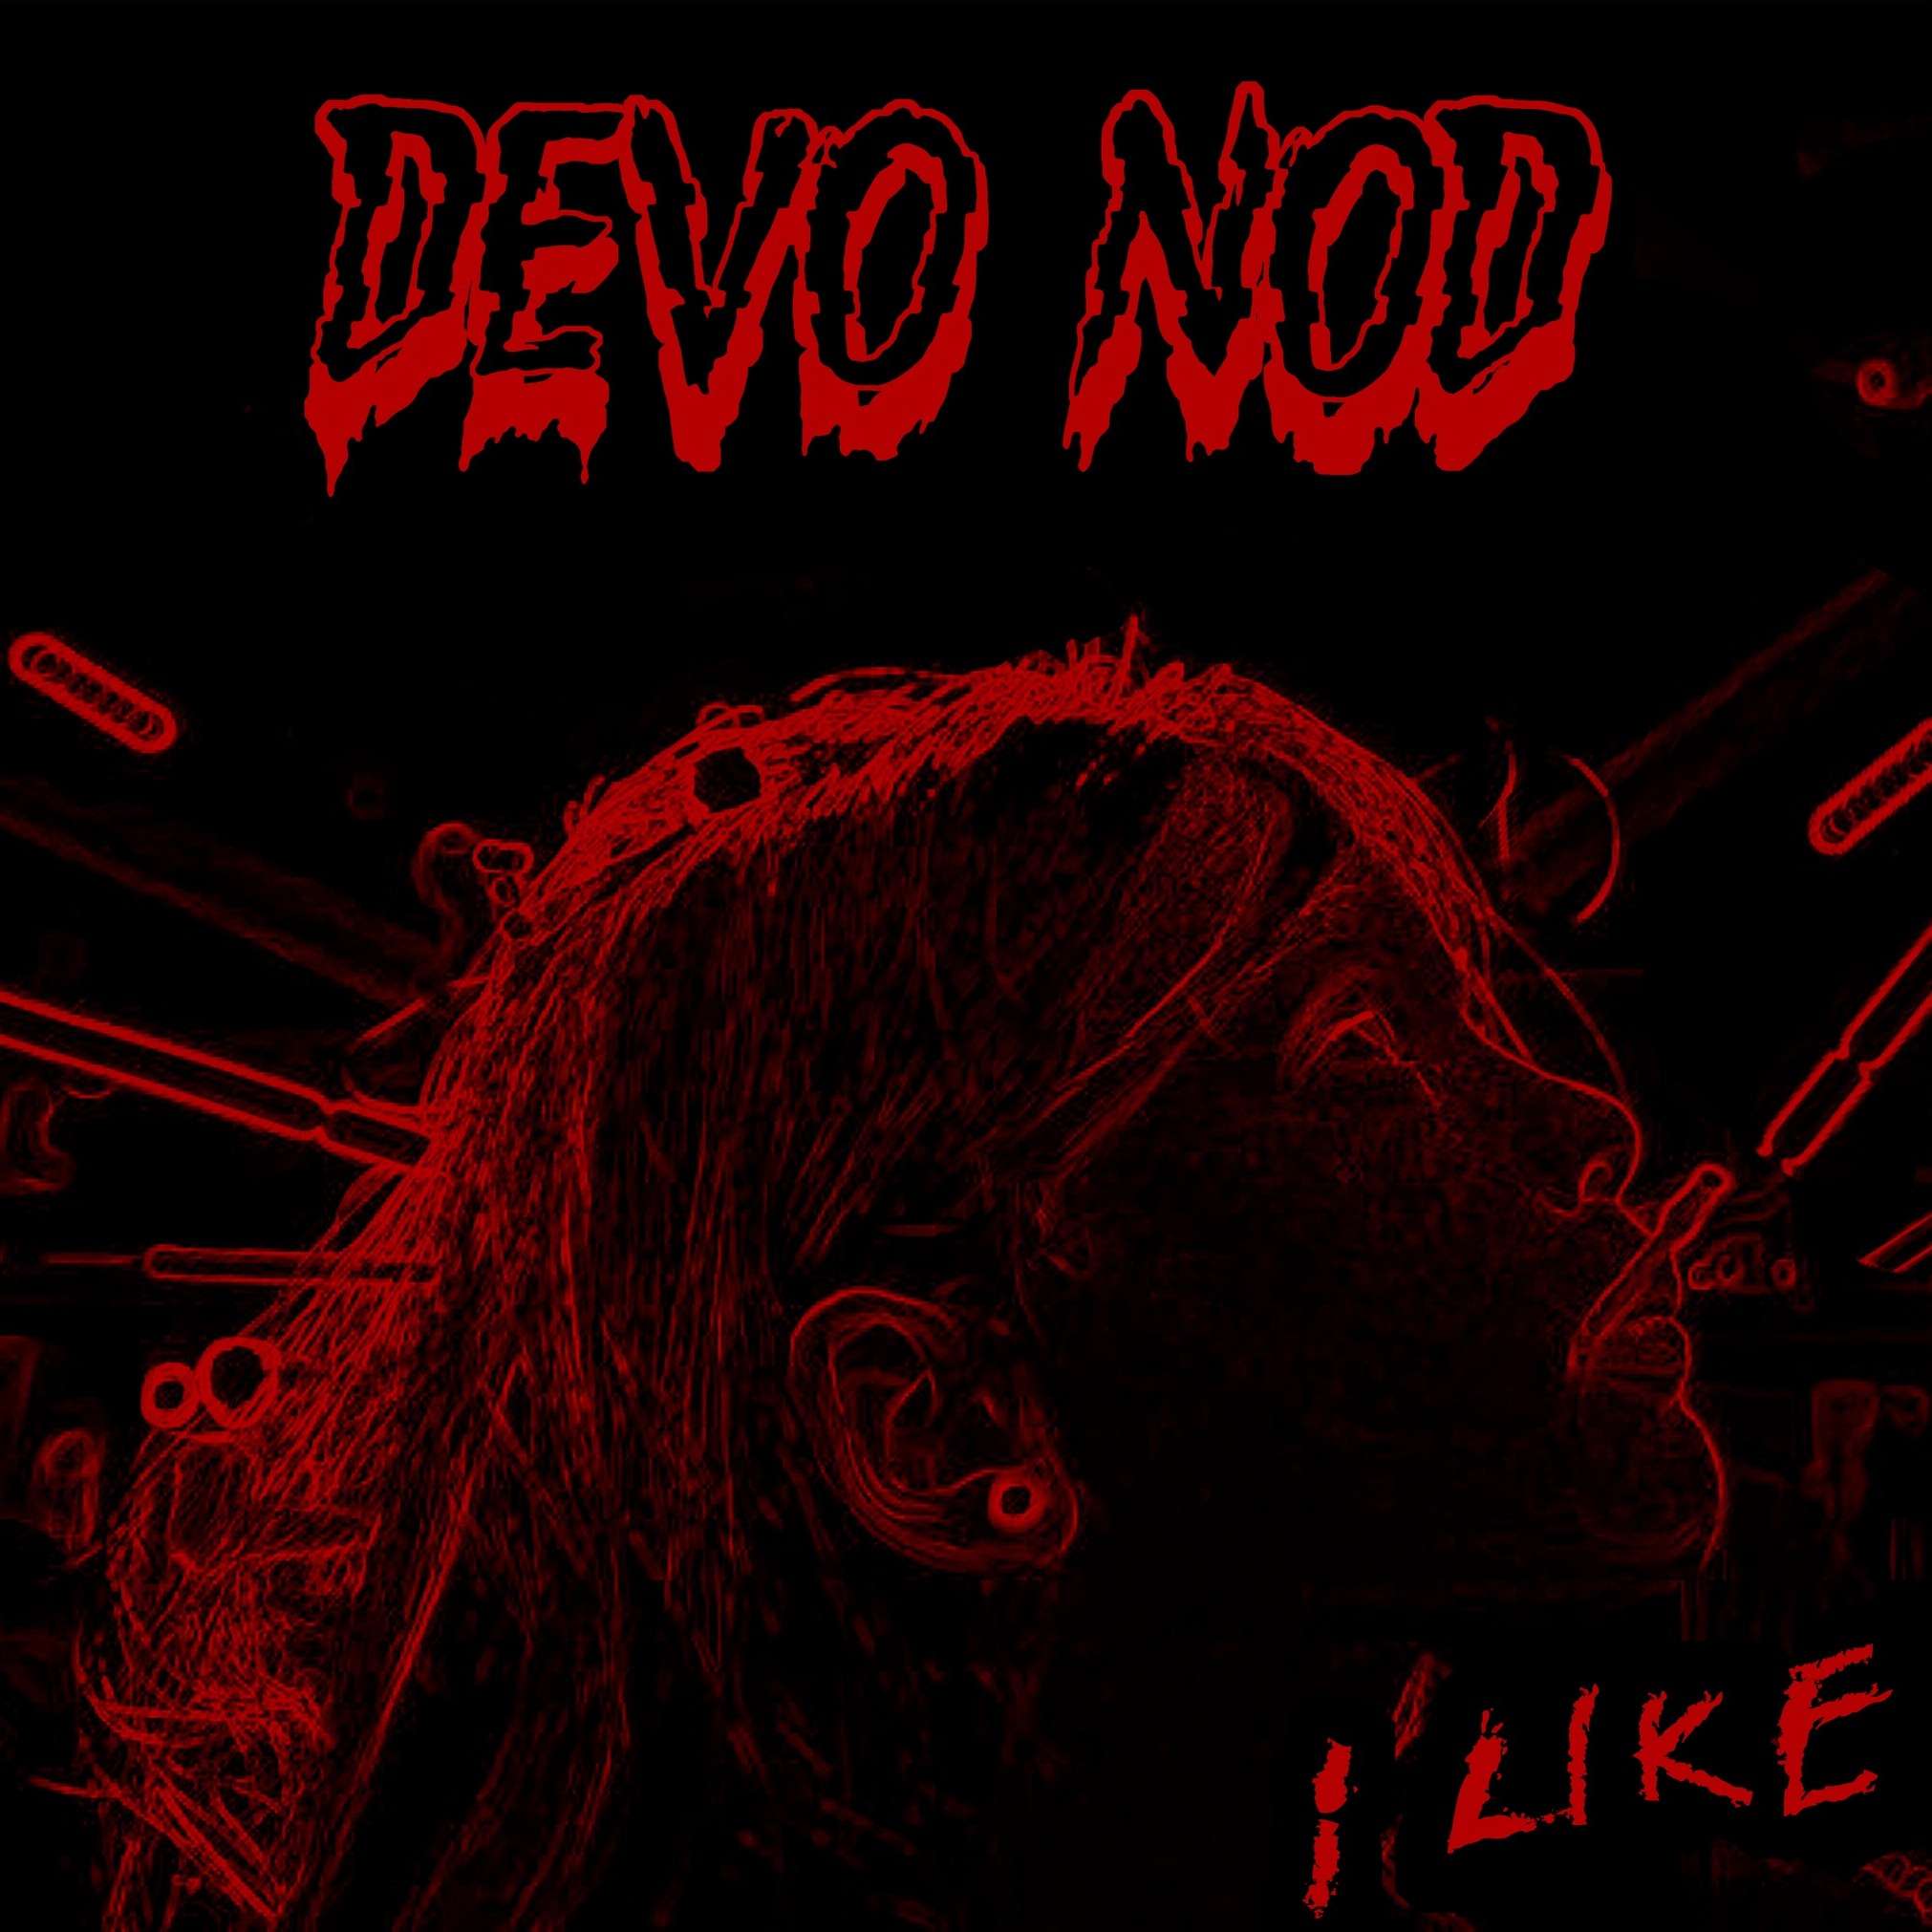 DEVO NOD: venerdì 11 novembre esce in radio “I Like” il nuovo singolo